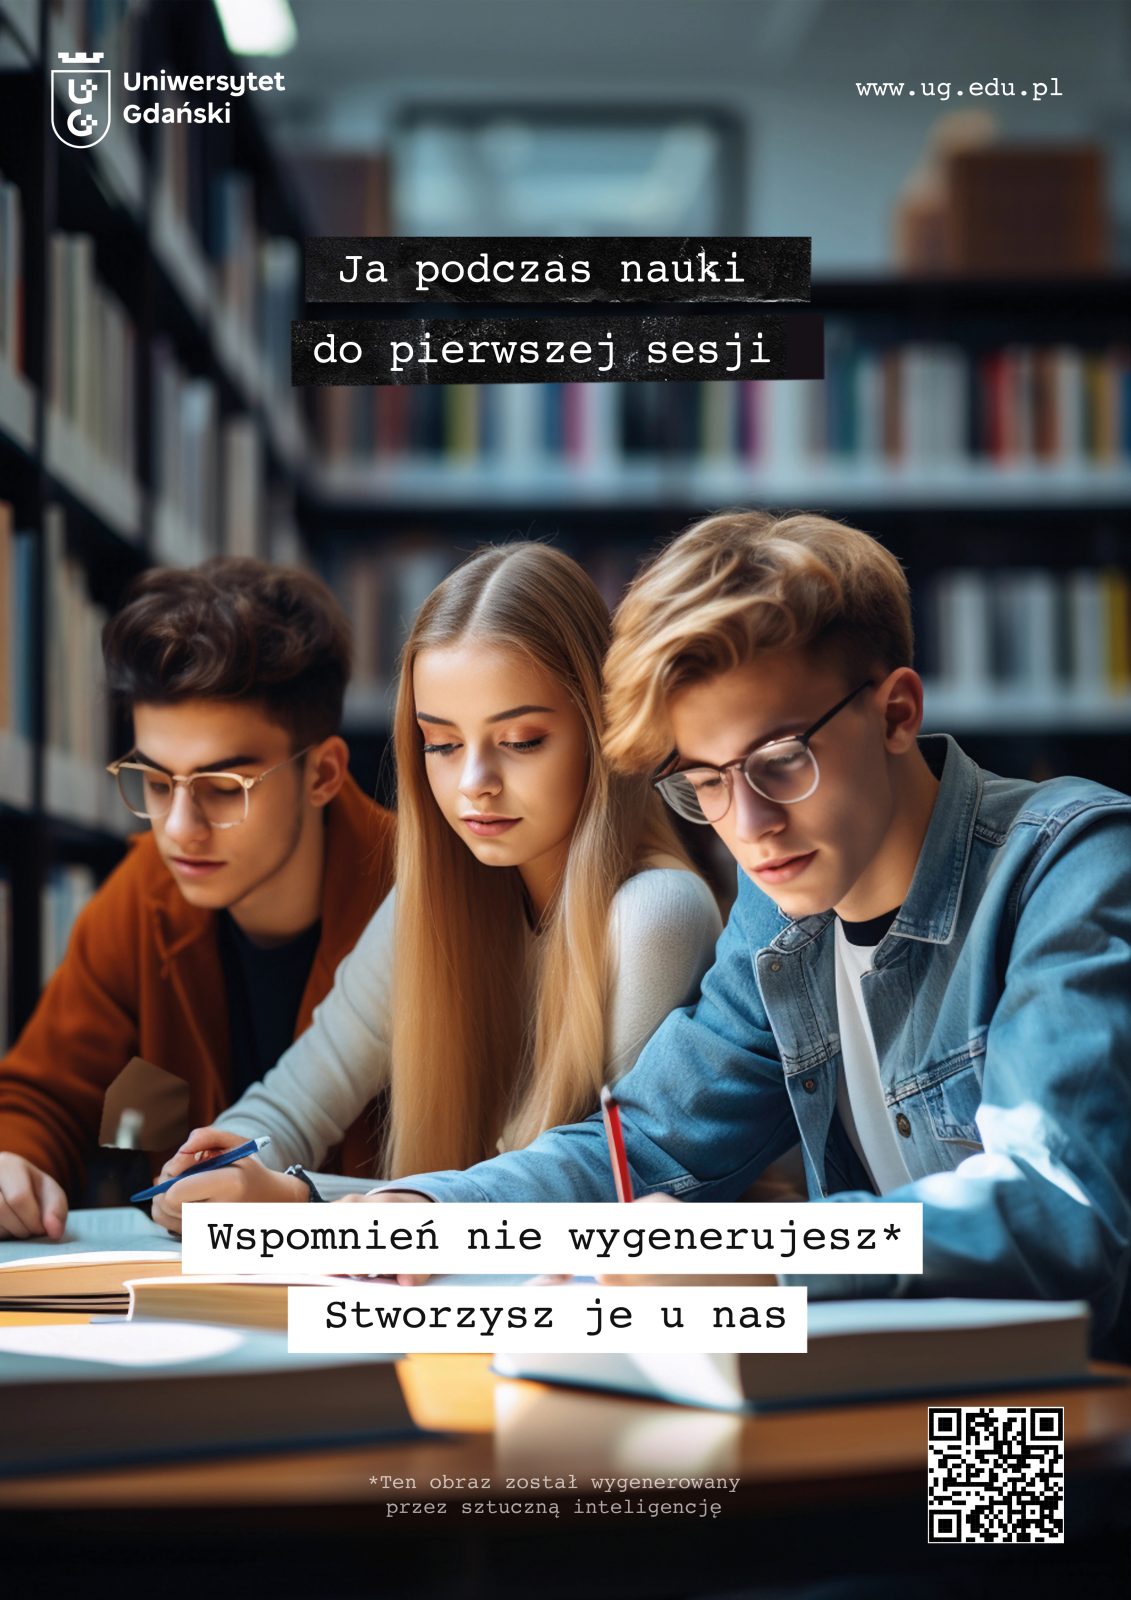 Kampania Uniwersytetu Gdańskiego (źródło: ug.edu.pl)